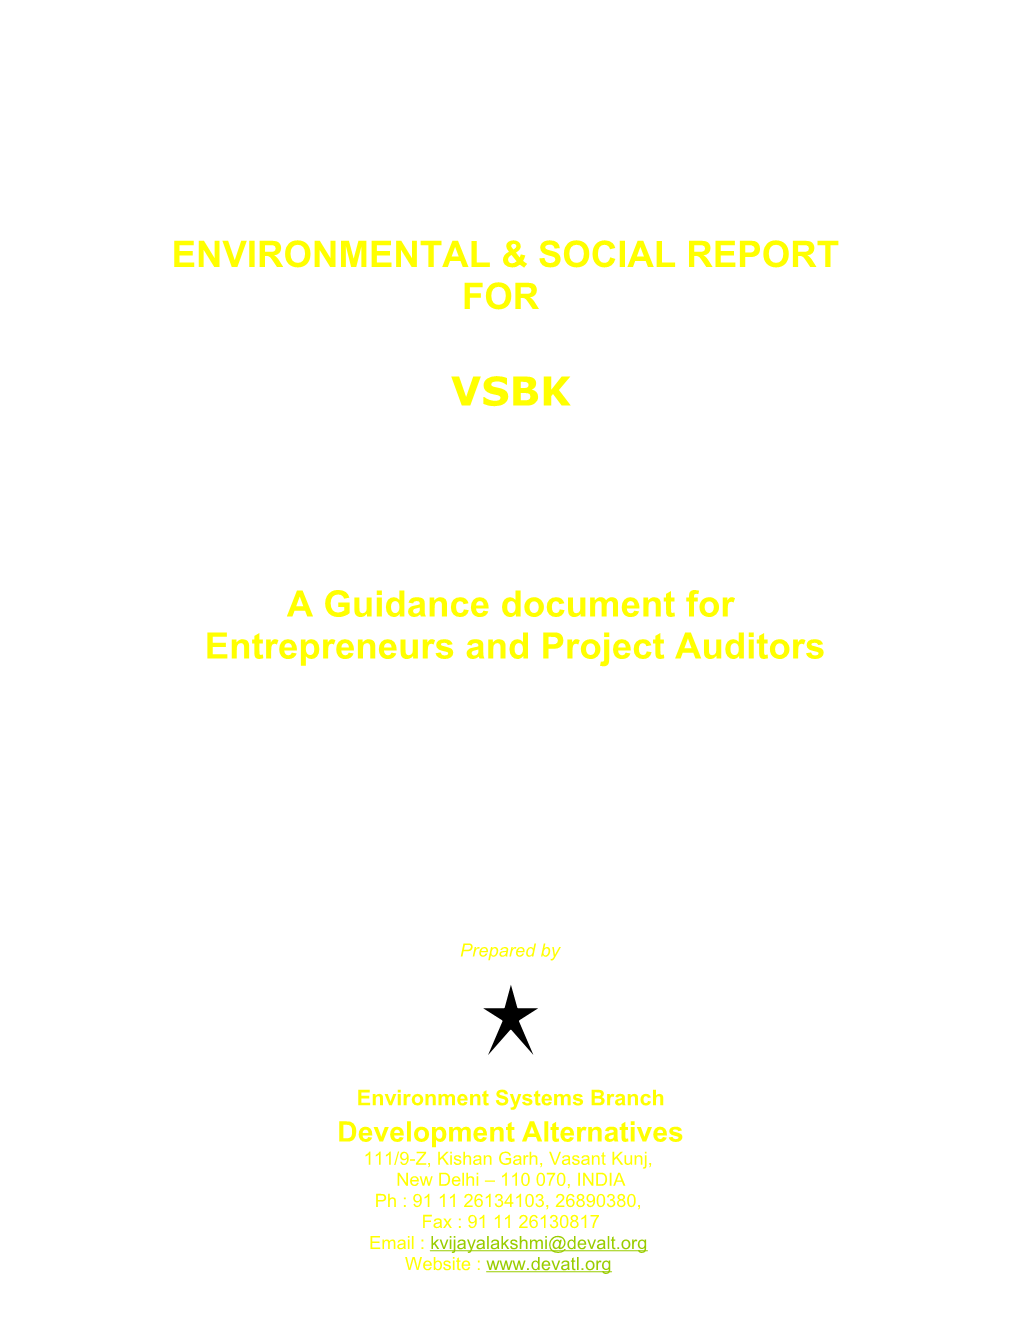 Environmental & Social Report for Vsbk